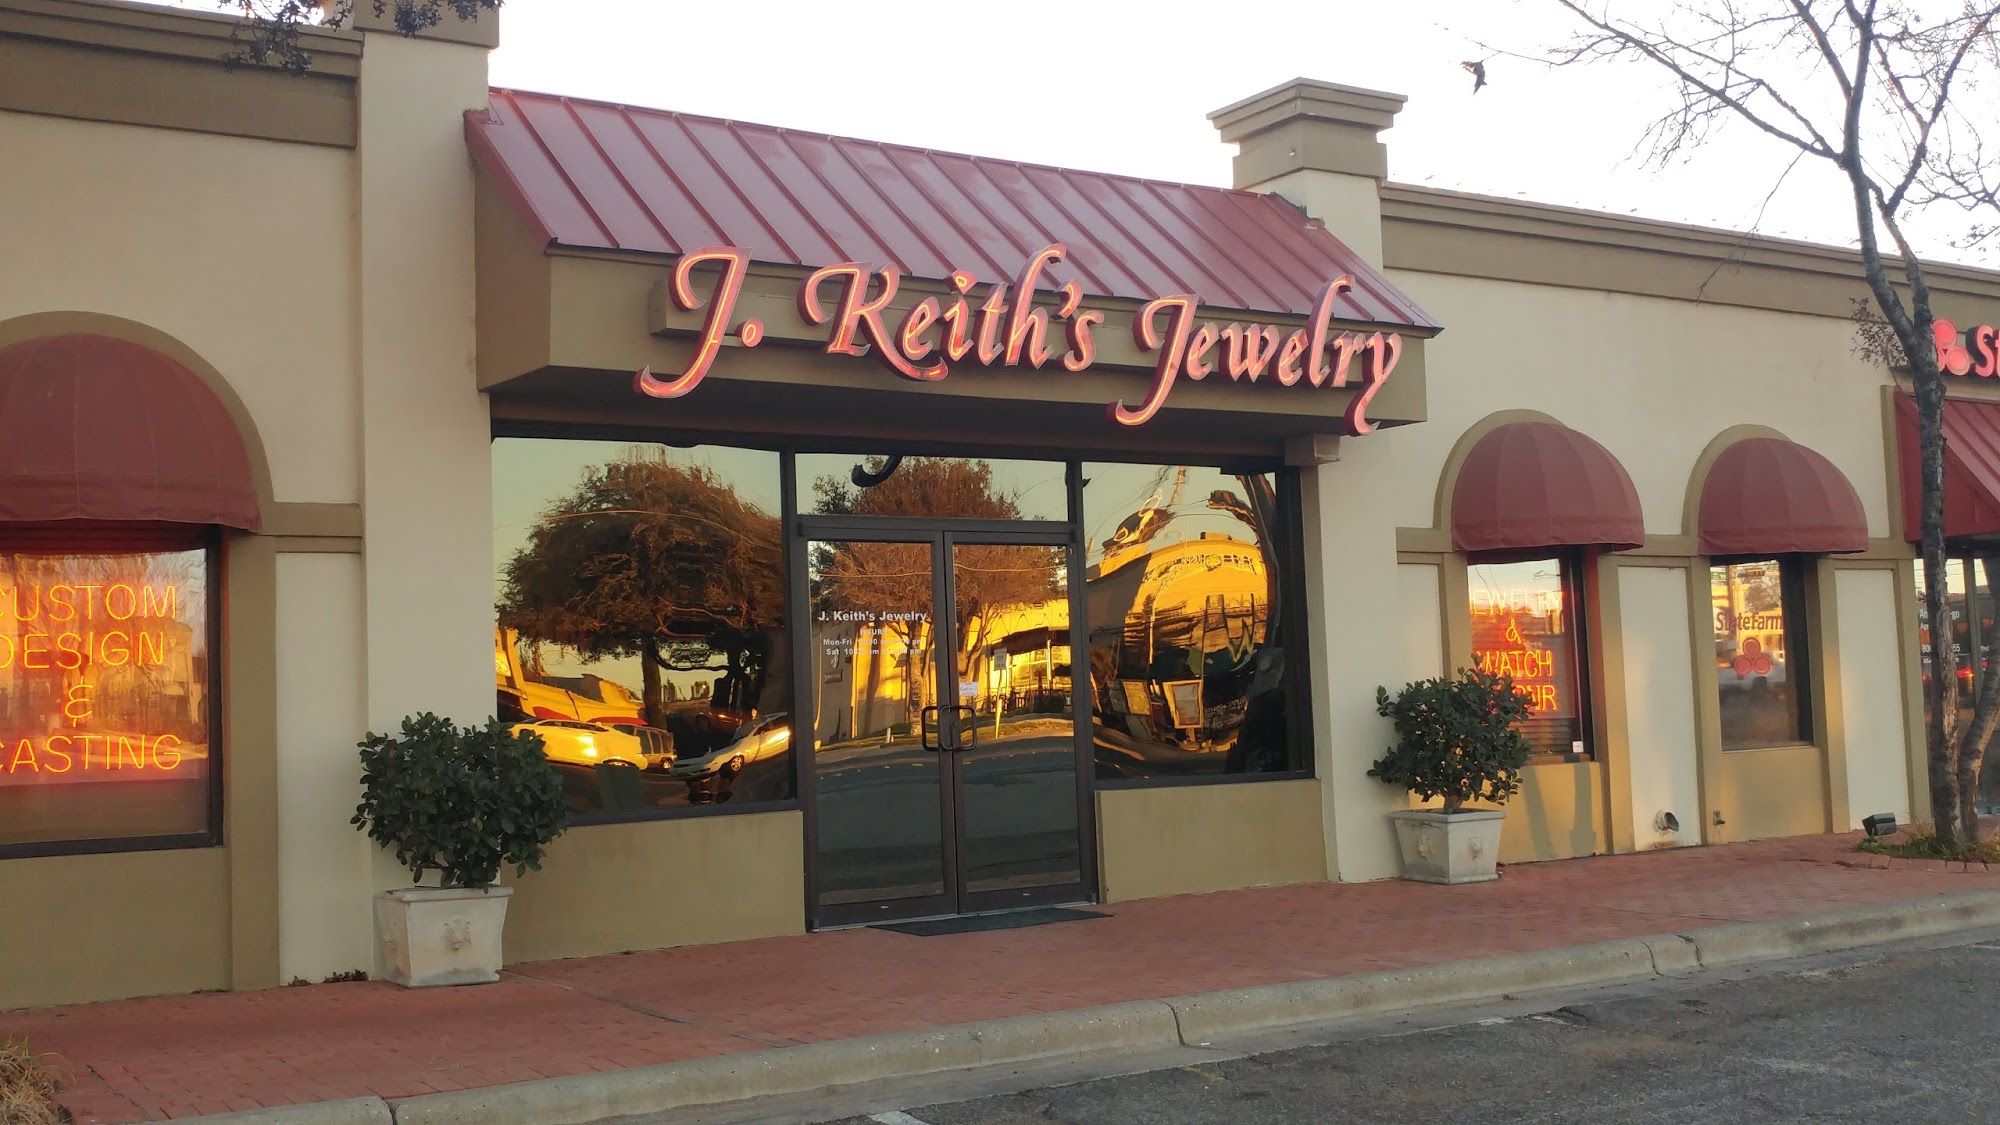 J. Keith's Jewelry